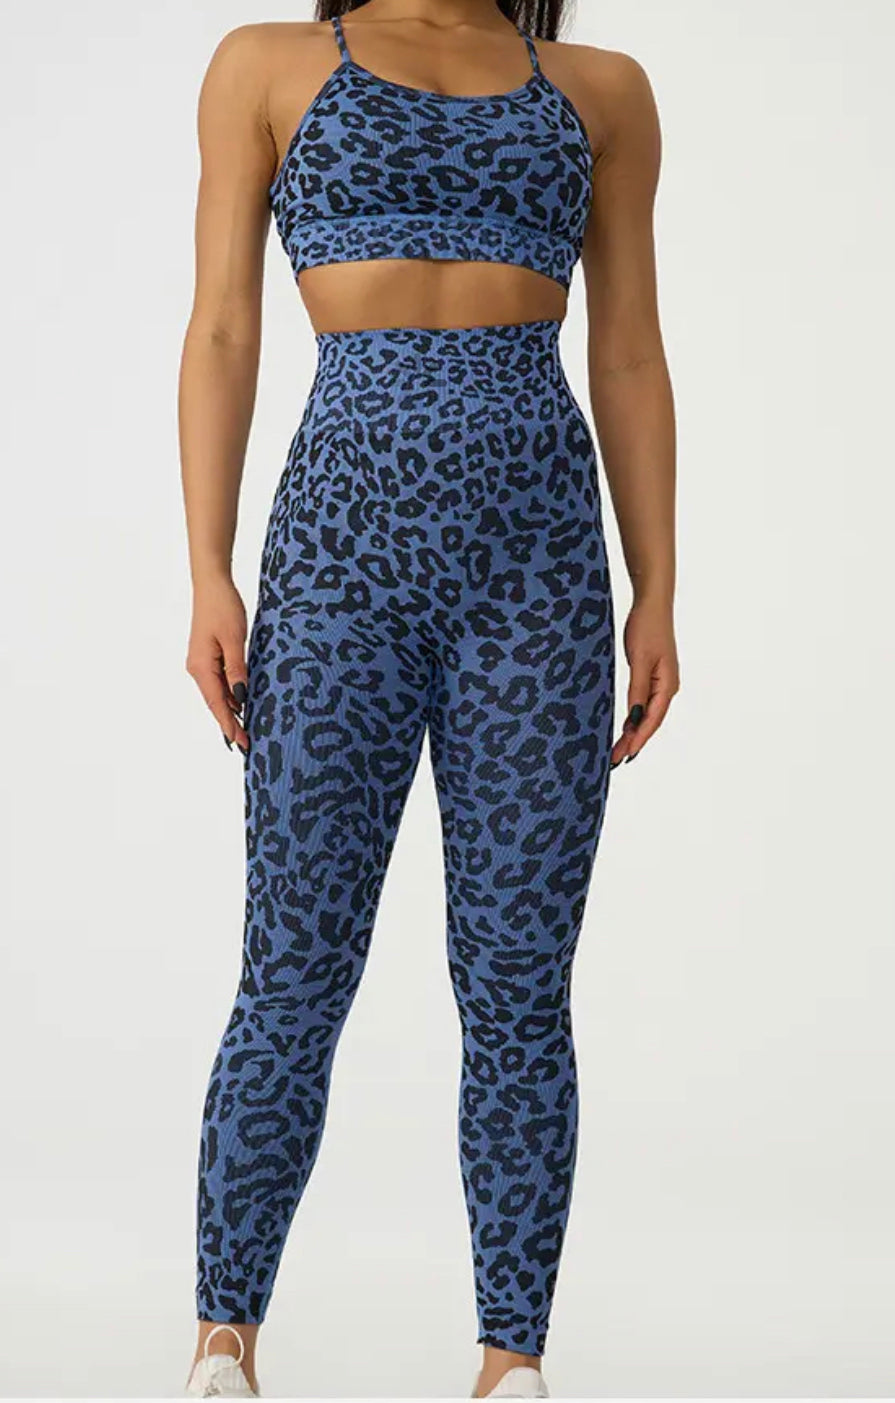 Blue Cheetah Print Leggings